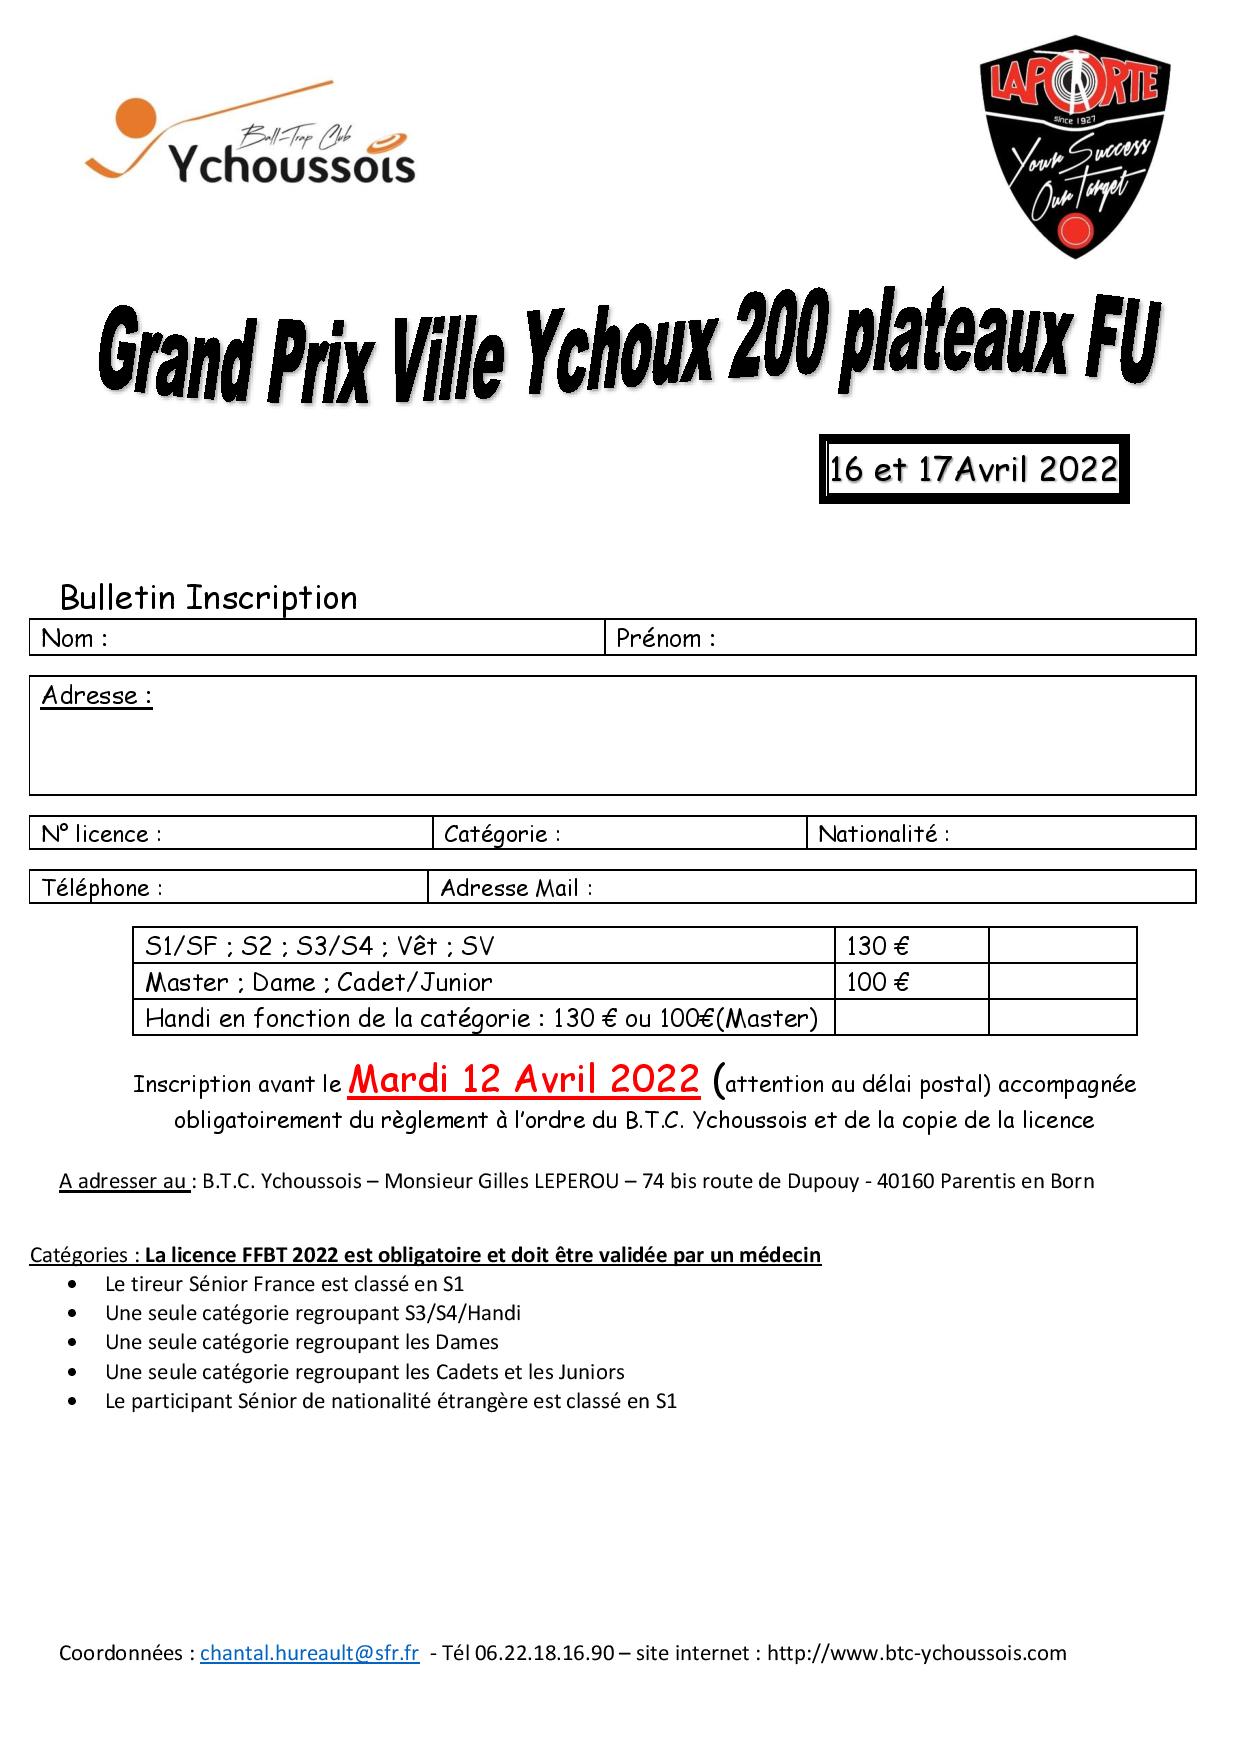 Bulletin d inscription Individuelle GP Ychoux 2022